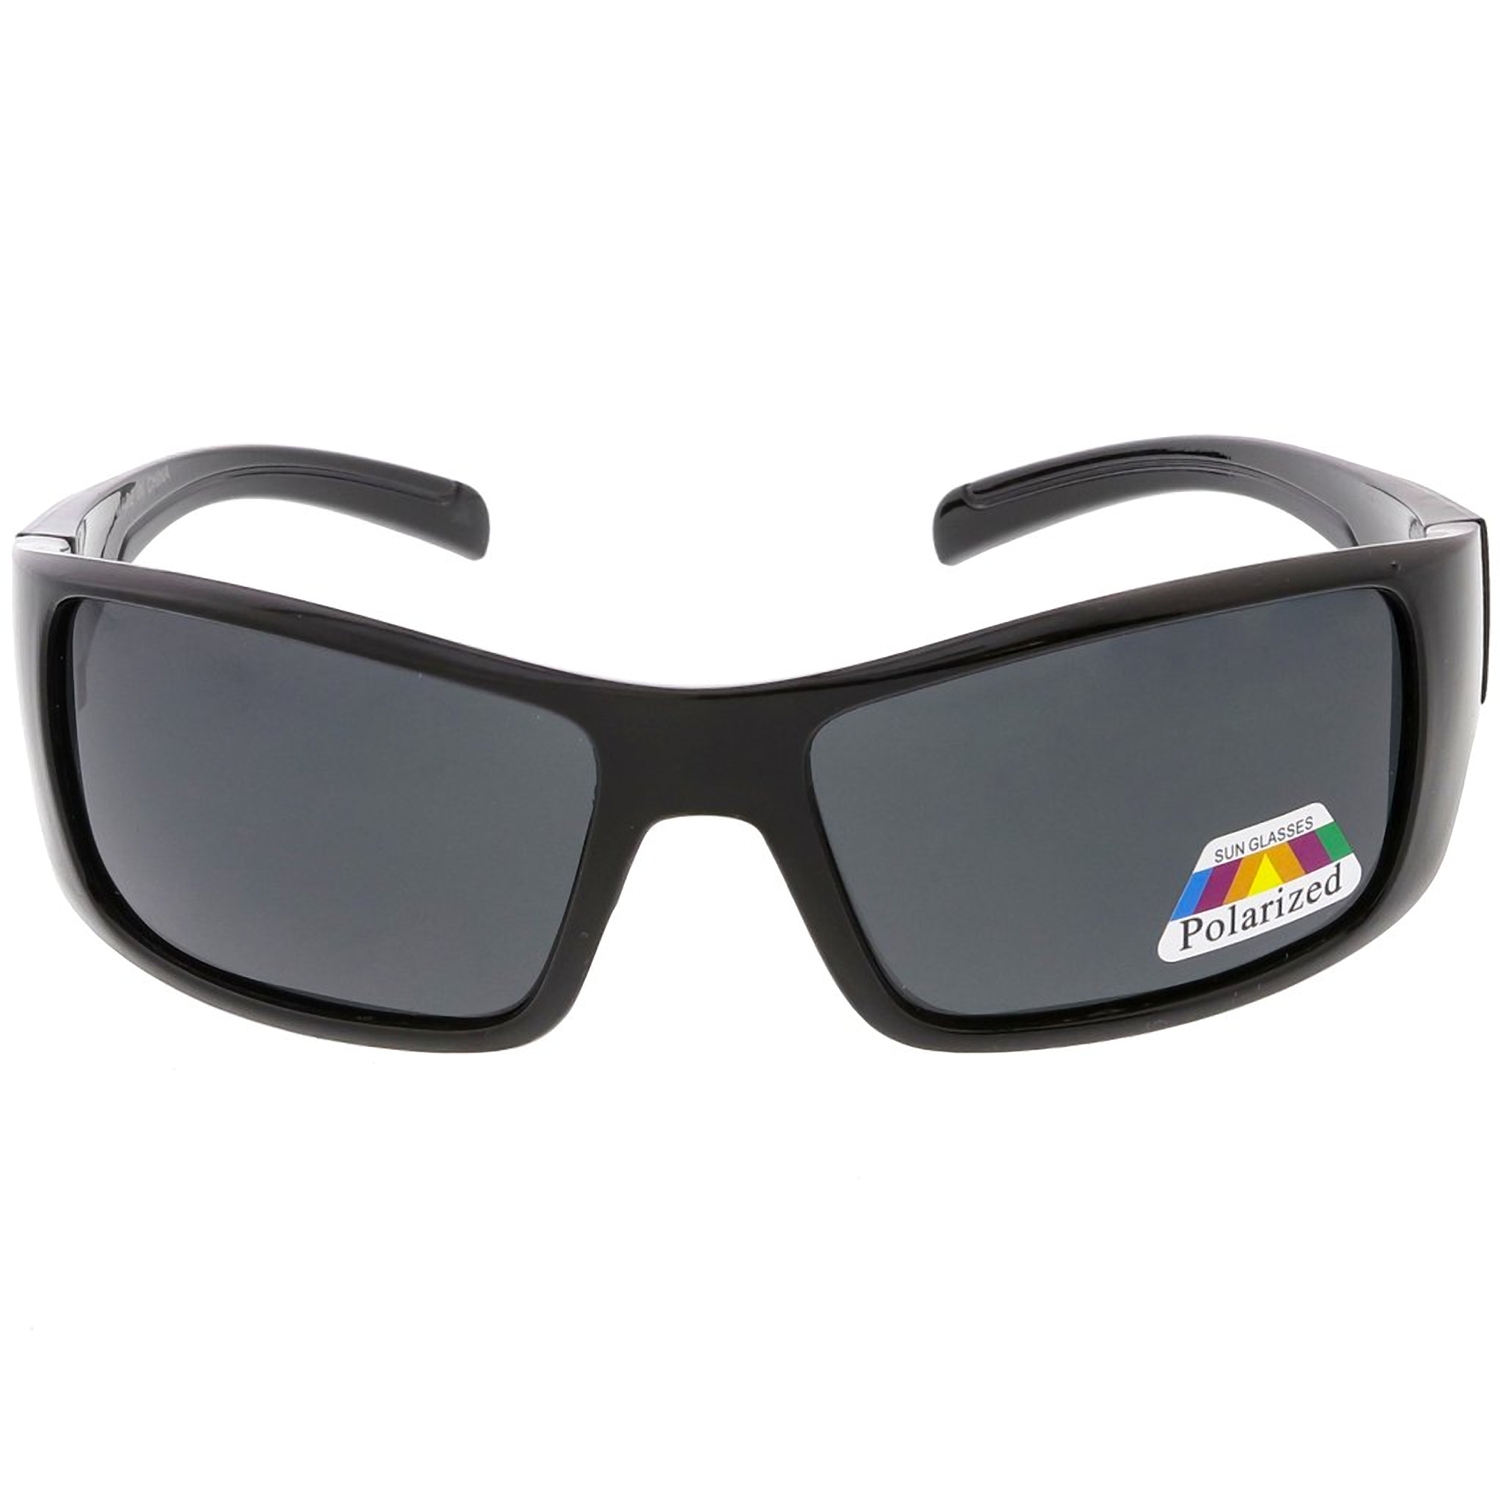 MLC Eyewear High Octane Collection "Hacienda 51" Unisex Polarized Sunglasses - image 3 of 4